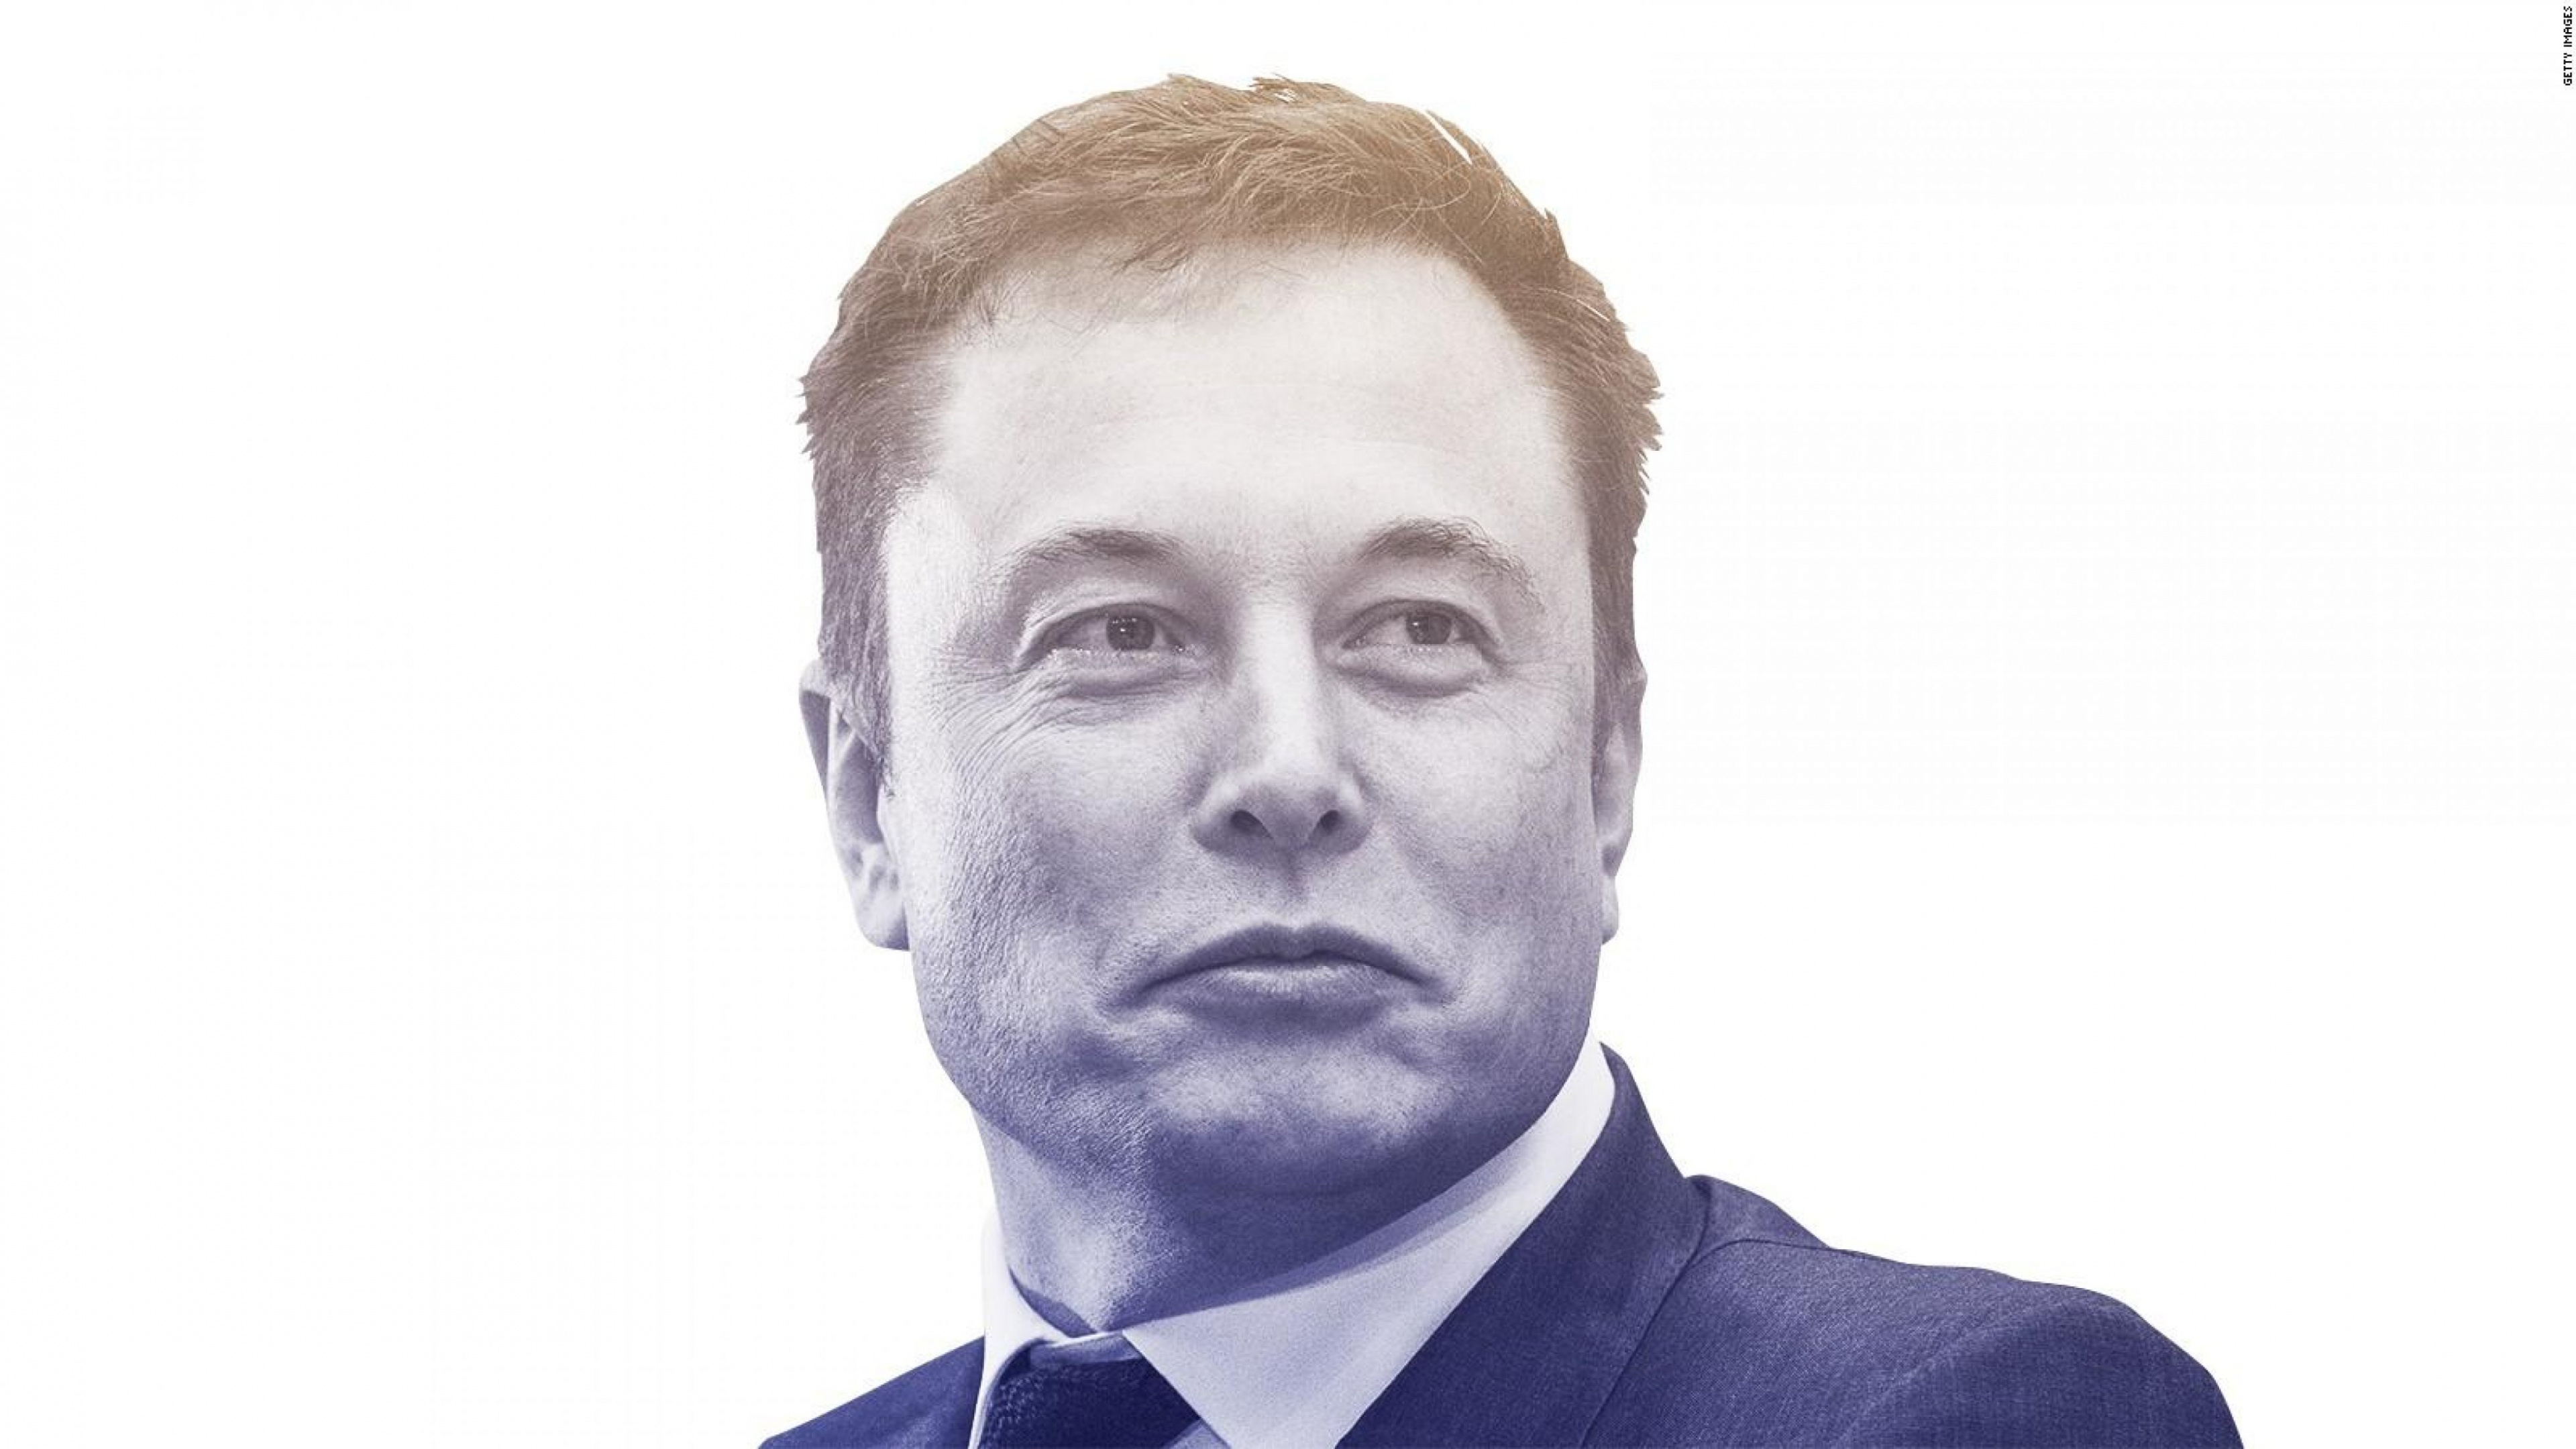 Elon Musk, Gesicht, Kopf, Kinn, Stirn. Wallpaper in 3840x2160 Resolution